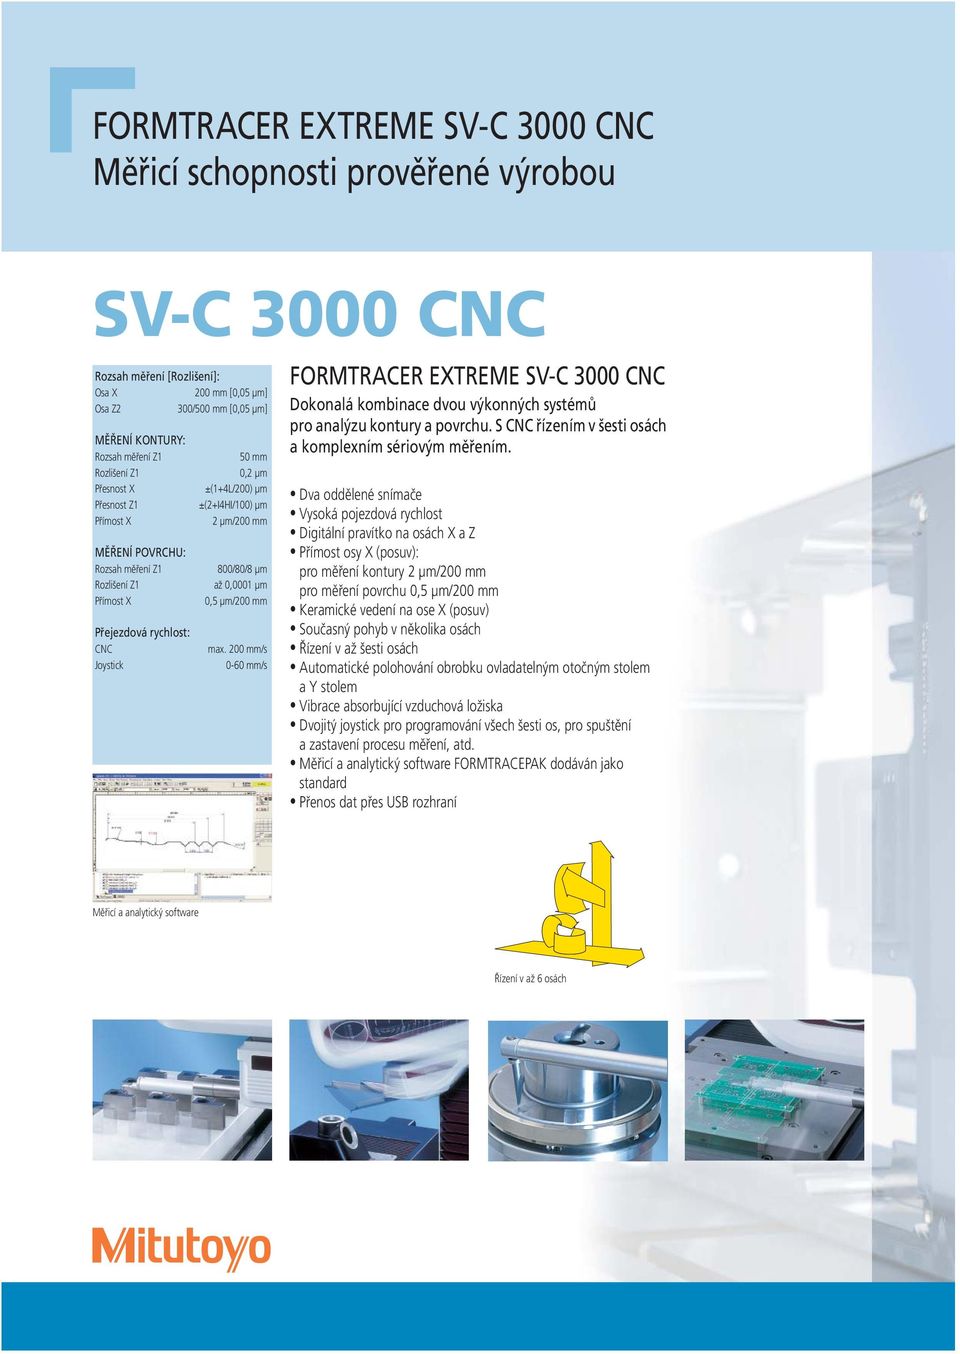 800/80/8 μm až 0,0001 μm 0,5 μm/200 mm max. 200 mm/s 0-60 mm/s FORMTRACER EXTREME SV-C 3000 CNC Dokonalá kombinace dvou výkonných systémů pro analýzu kontury a povrchu.